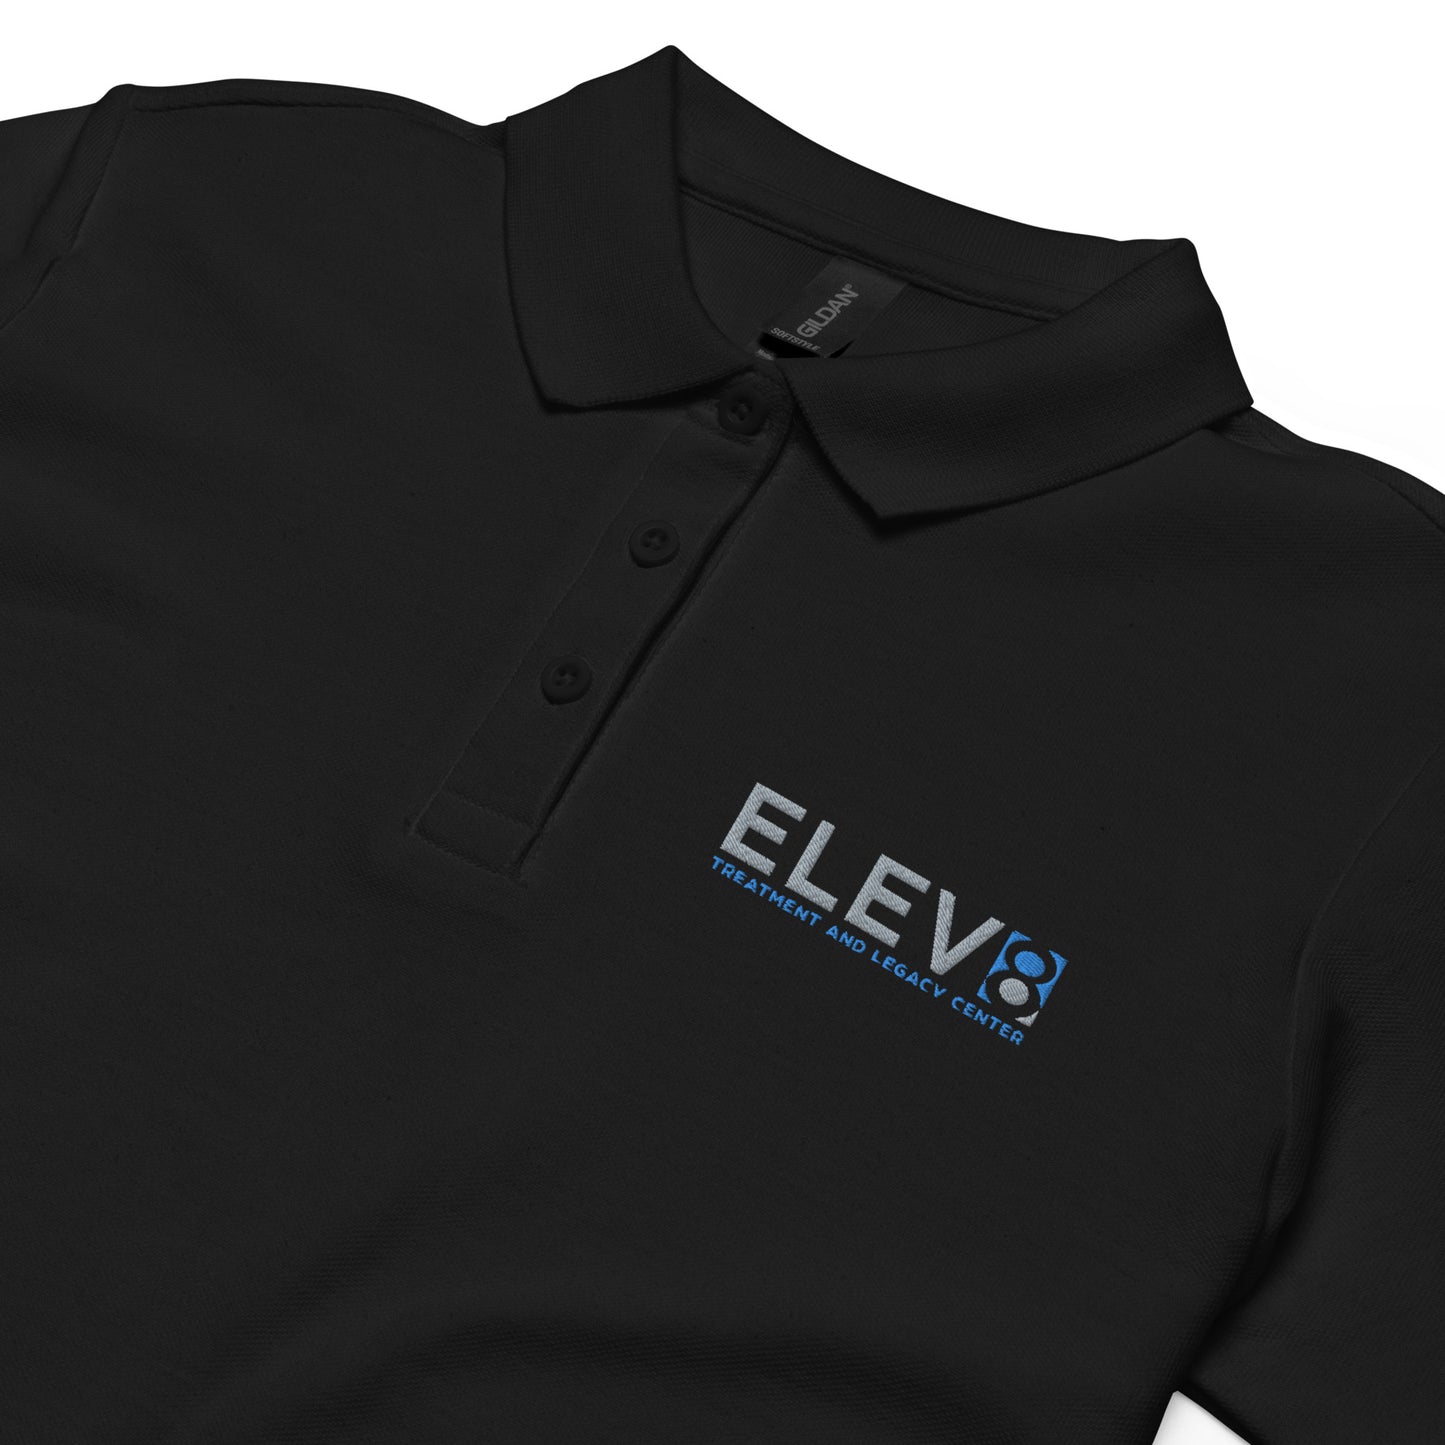 Elev8 Women’s pique polo shirt